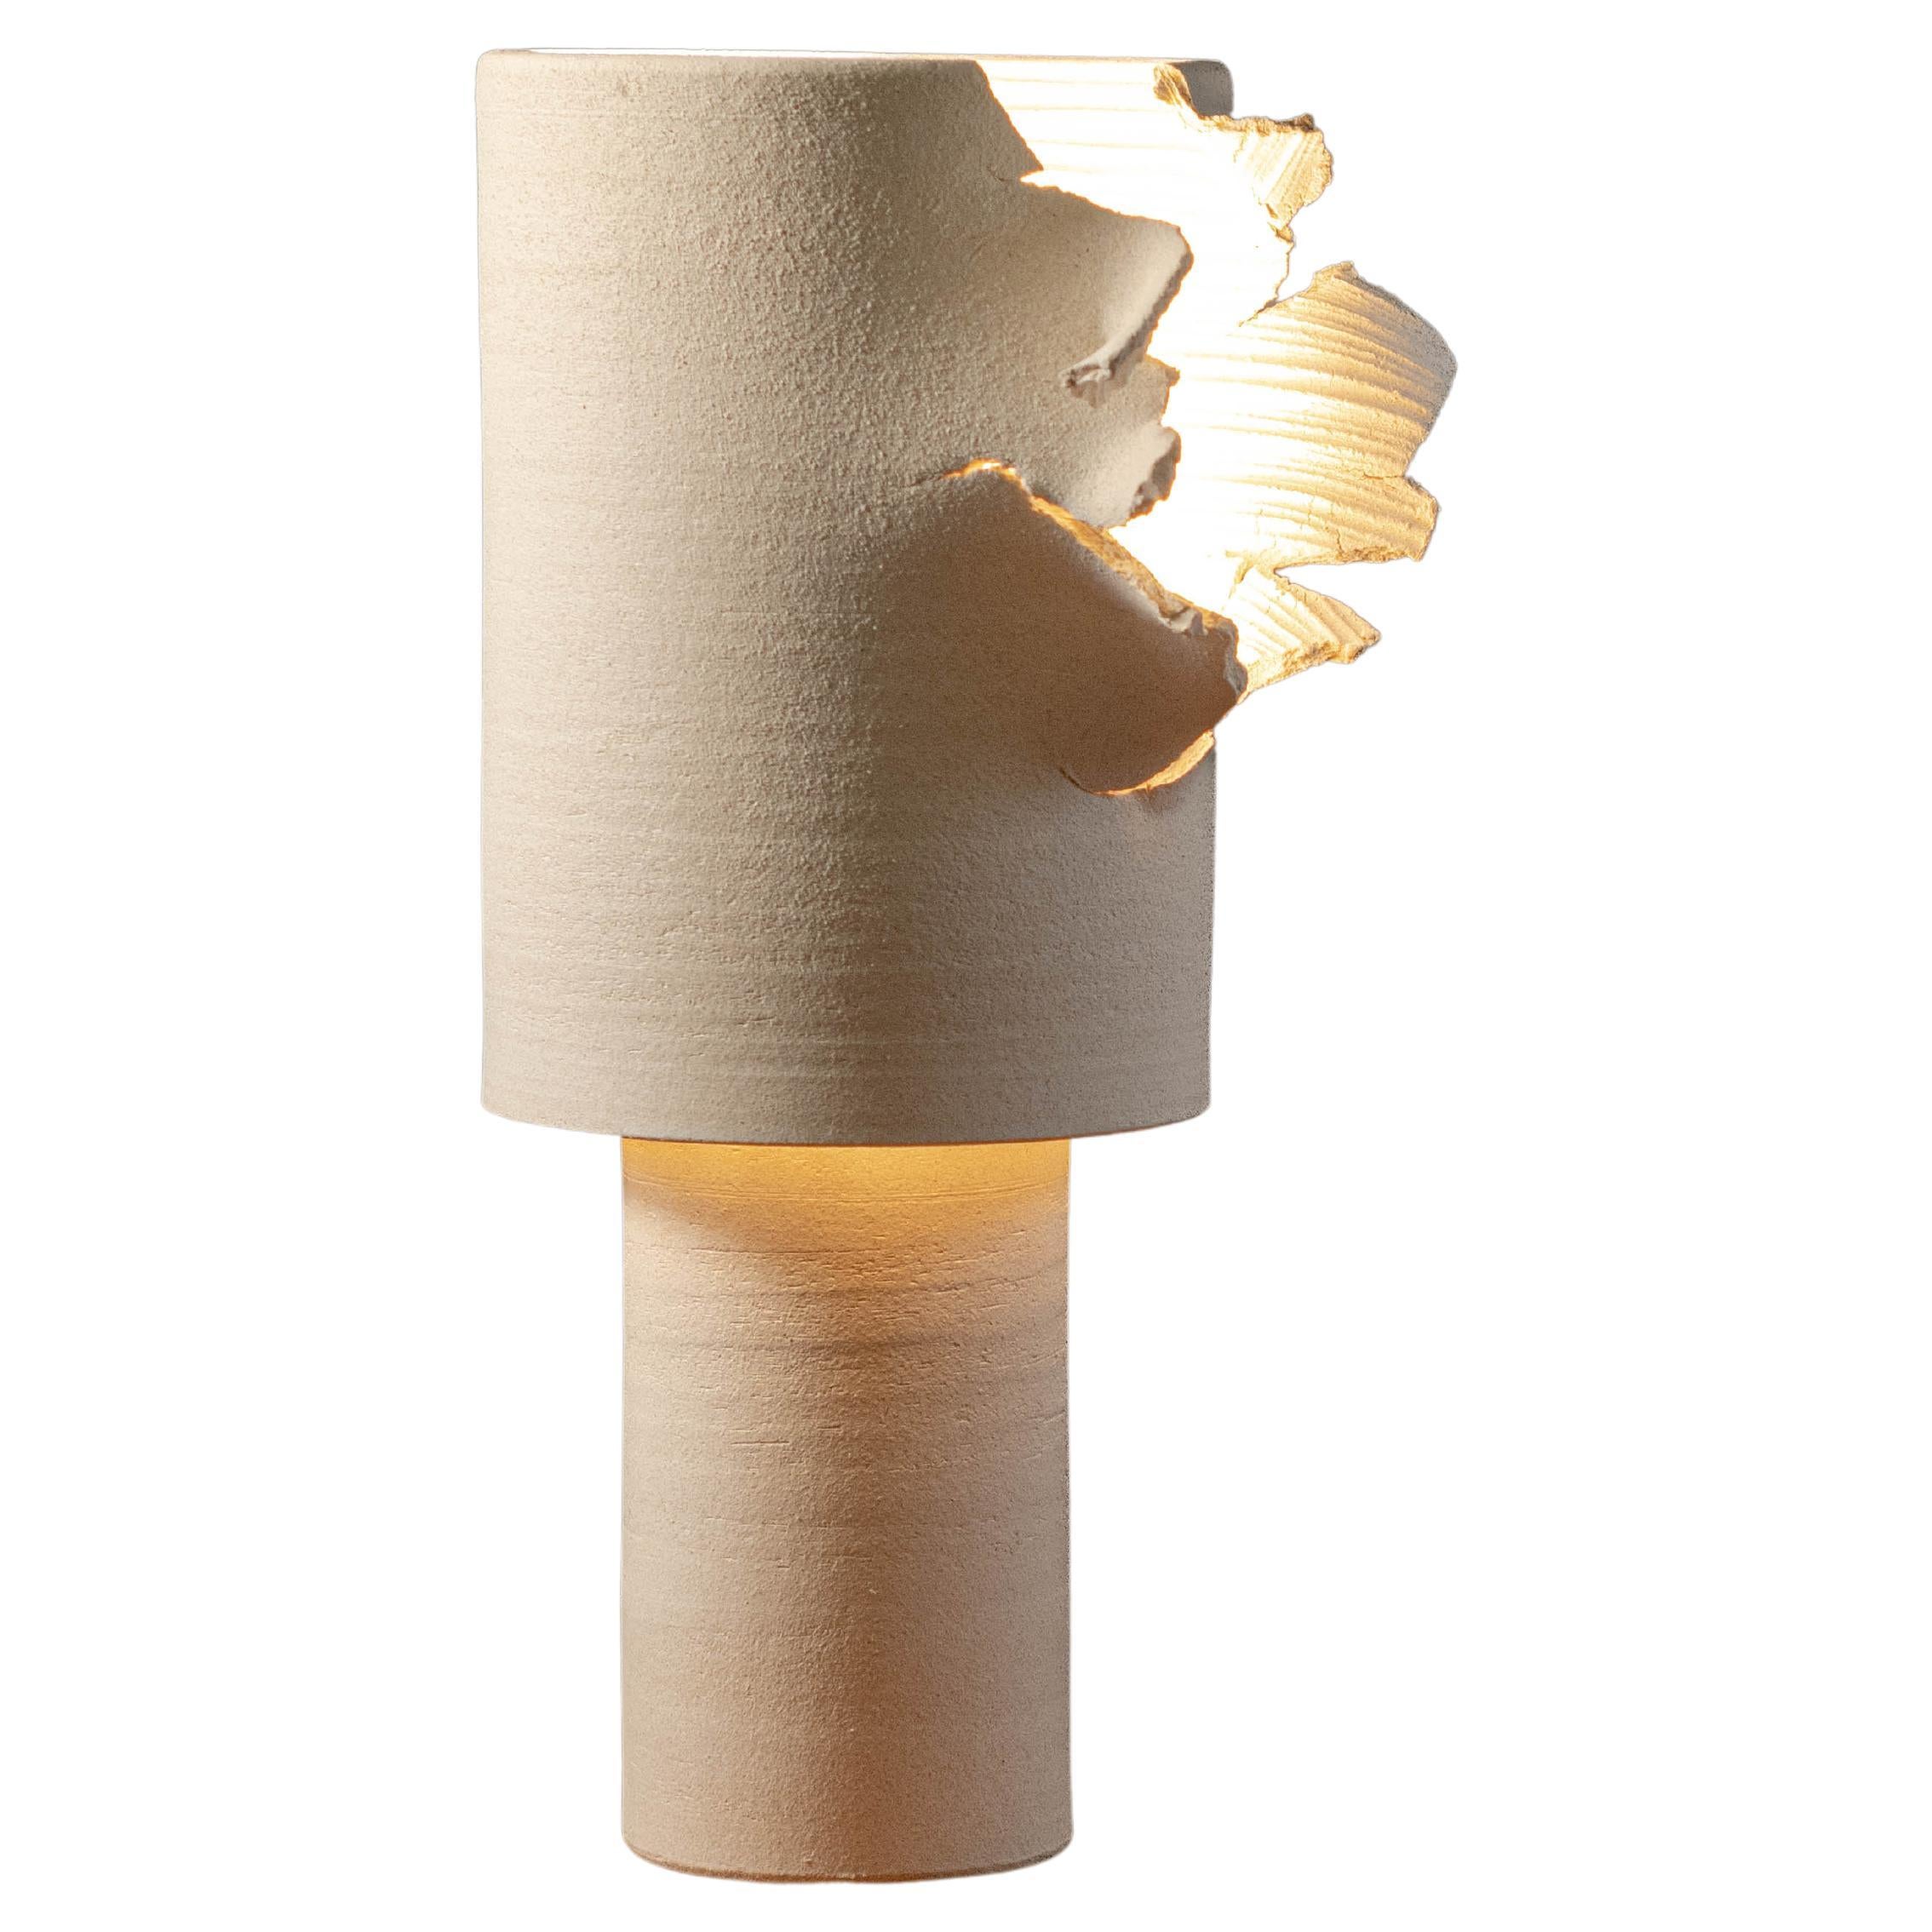 Ceramic Table Lamp Burst #1 Artist Made For Sale